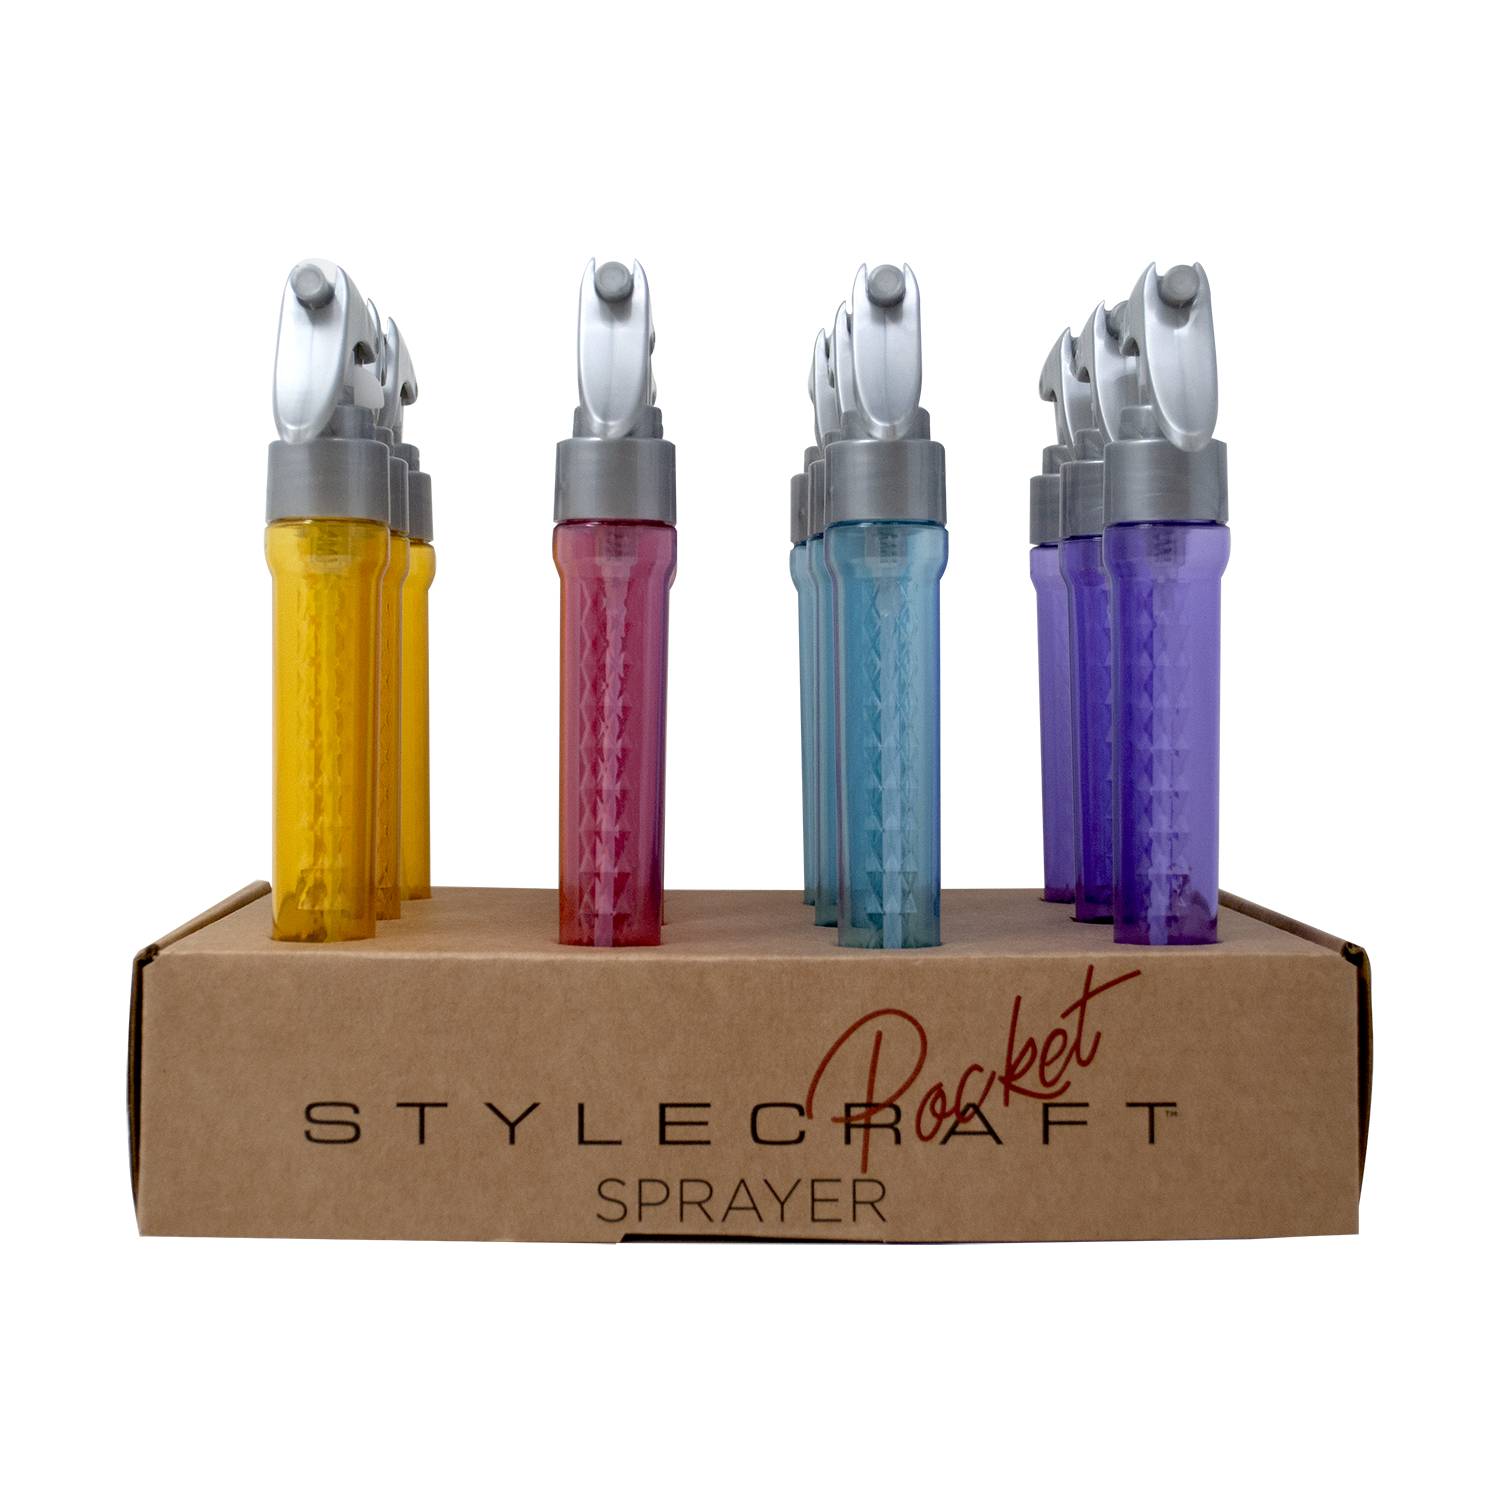 Stylecraft Pocket SprayerSTYLECRAFT